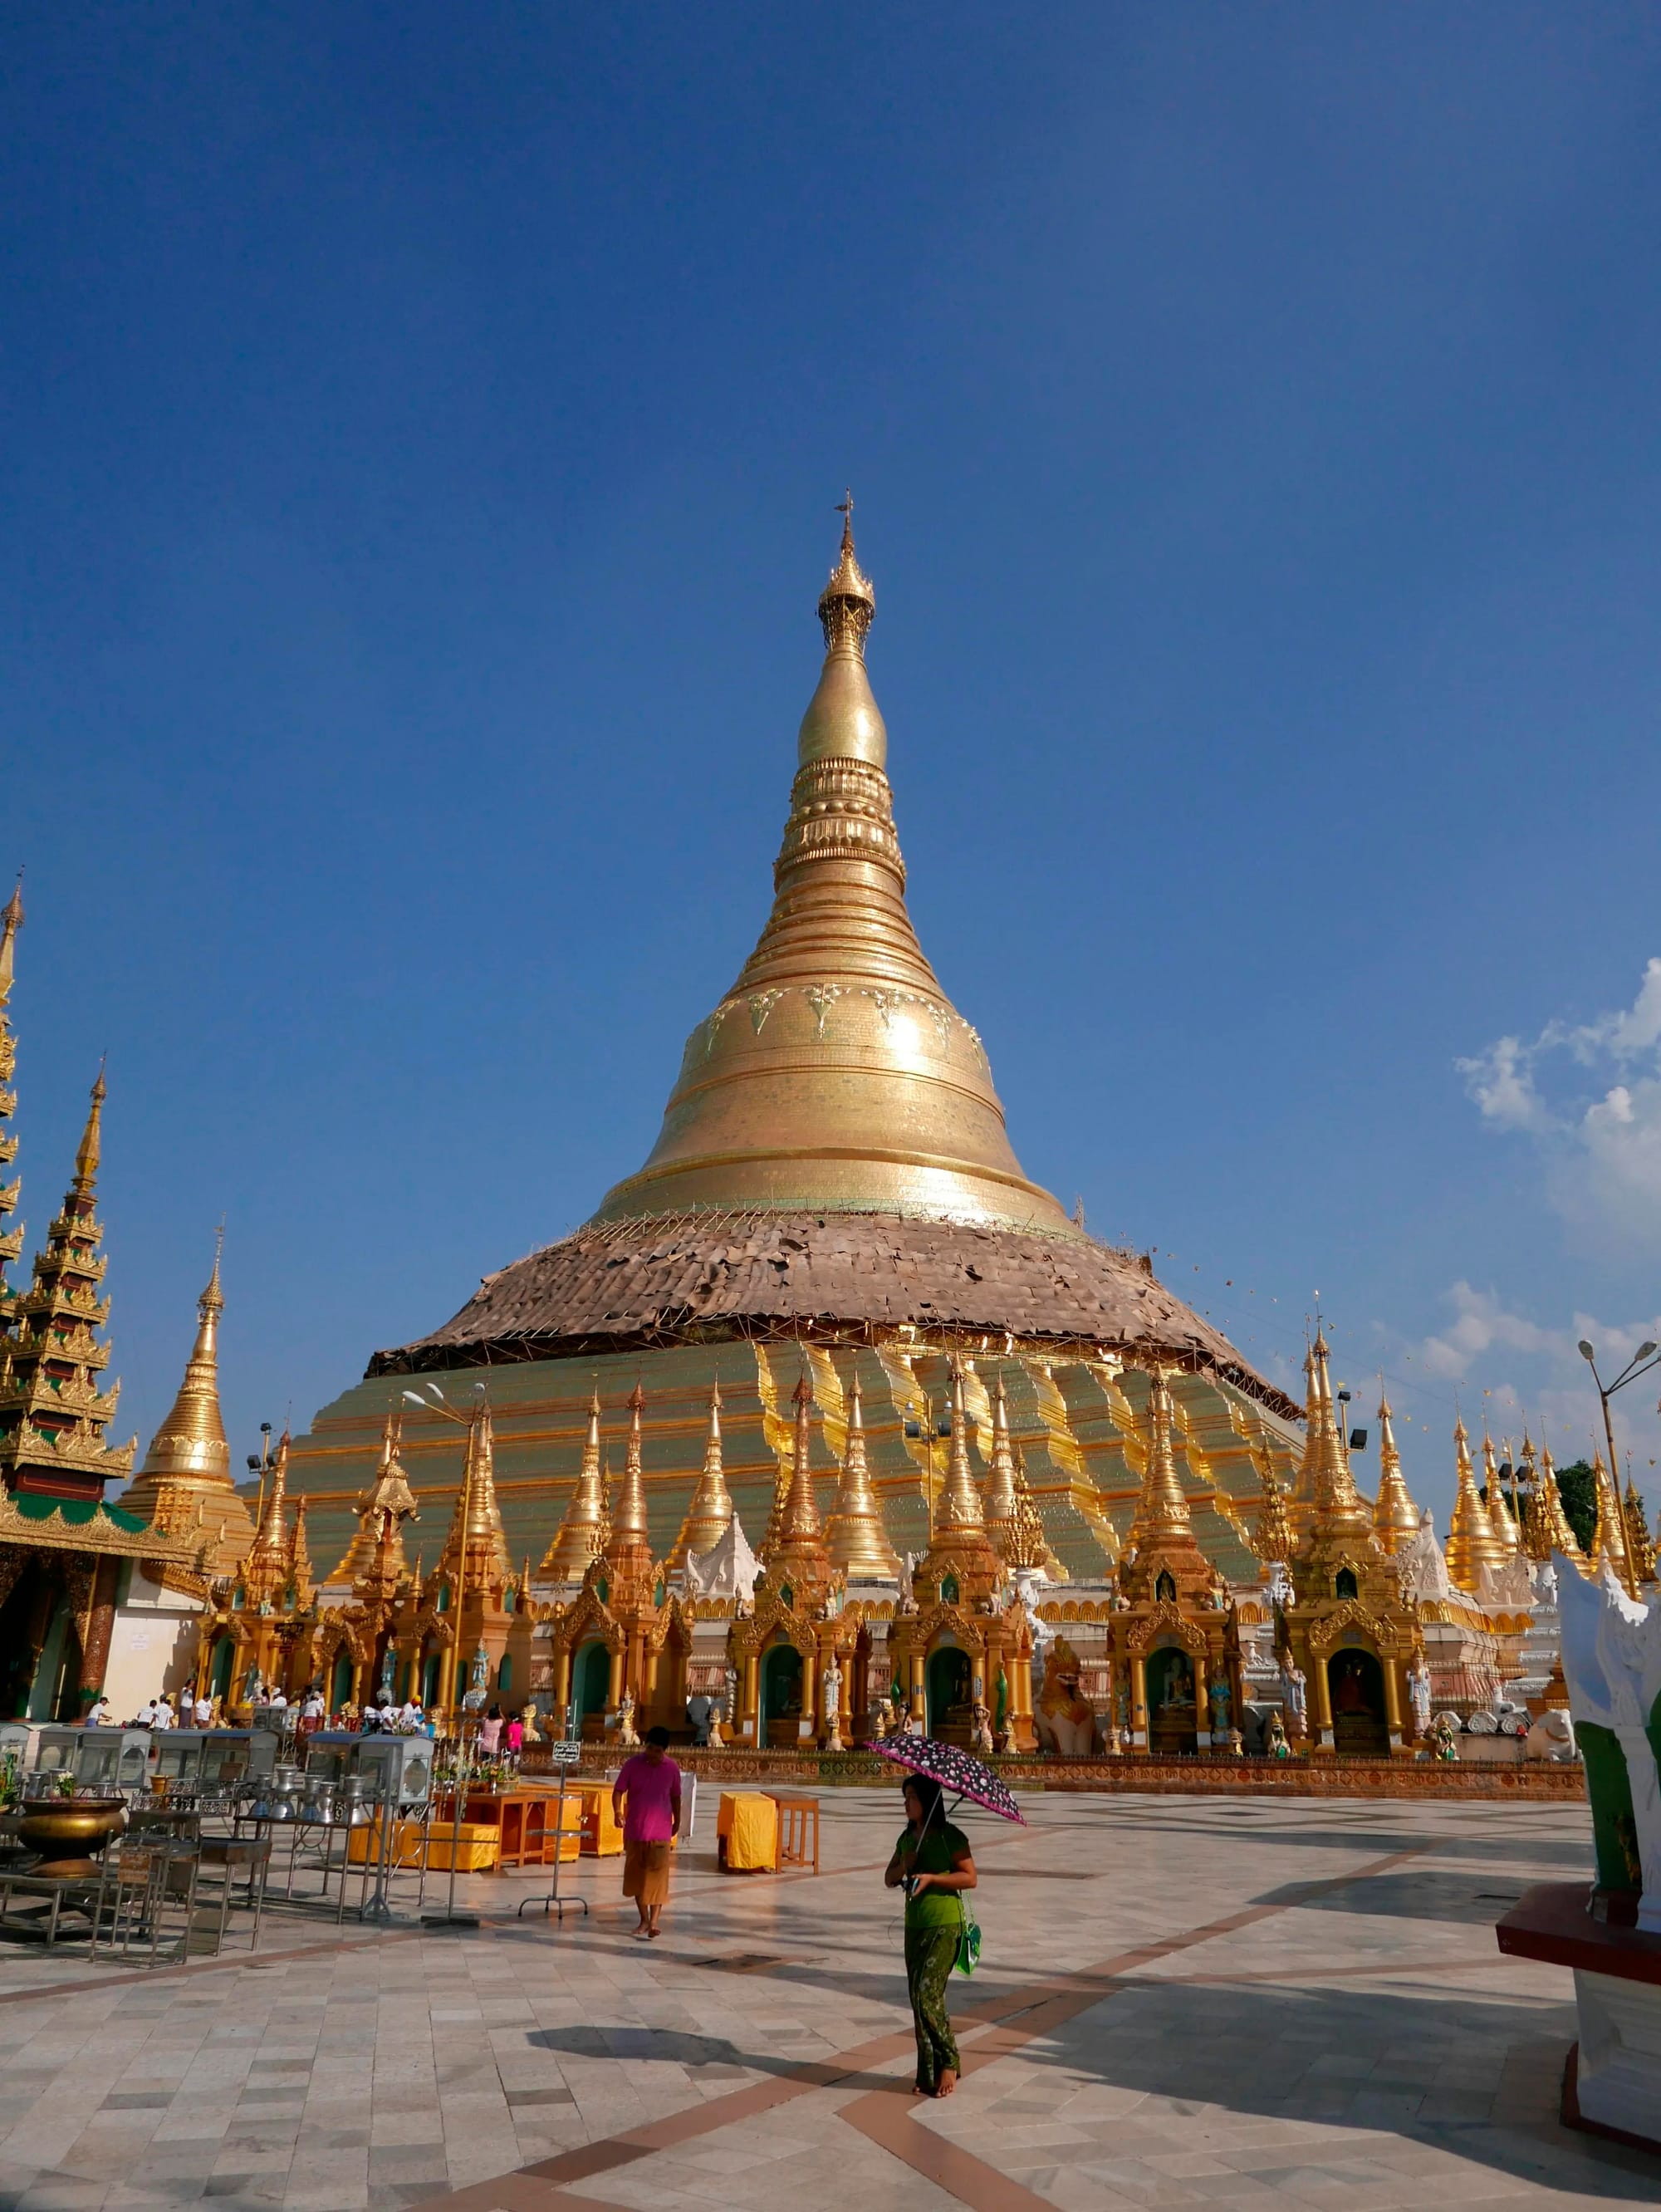 Photo by Author — the Shwedagon Pagoda